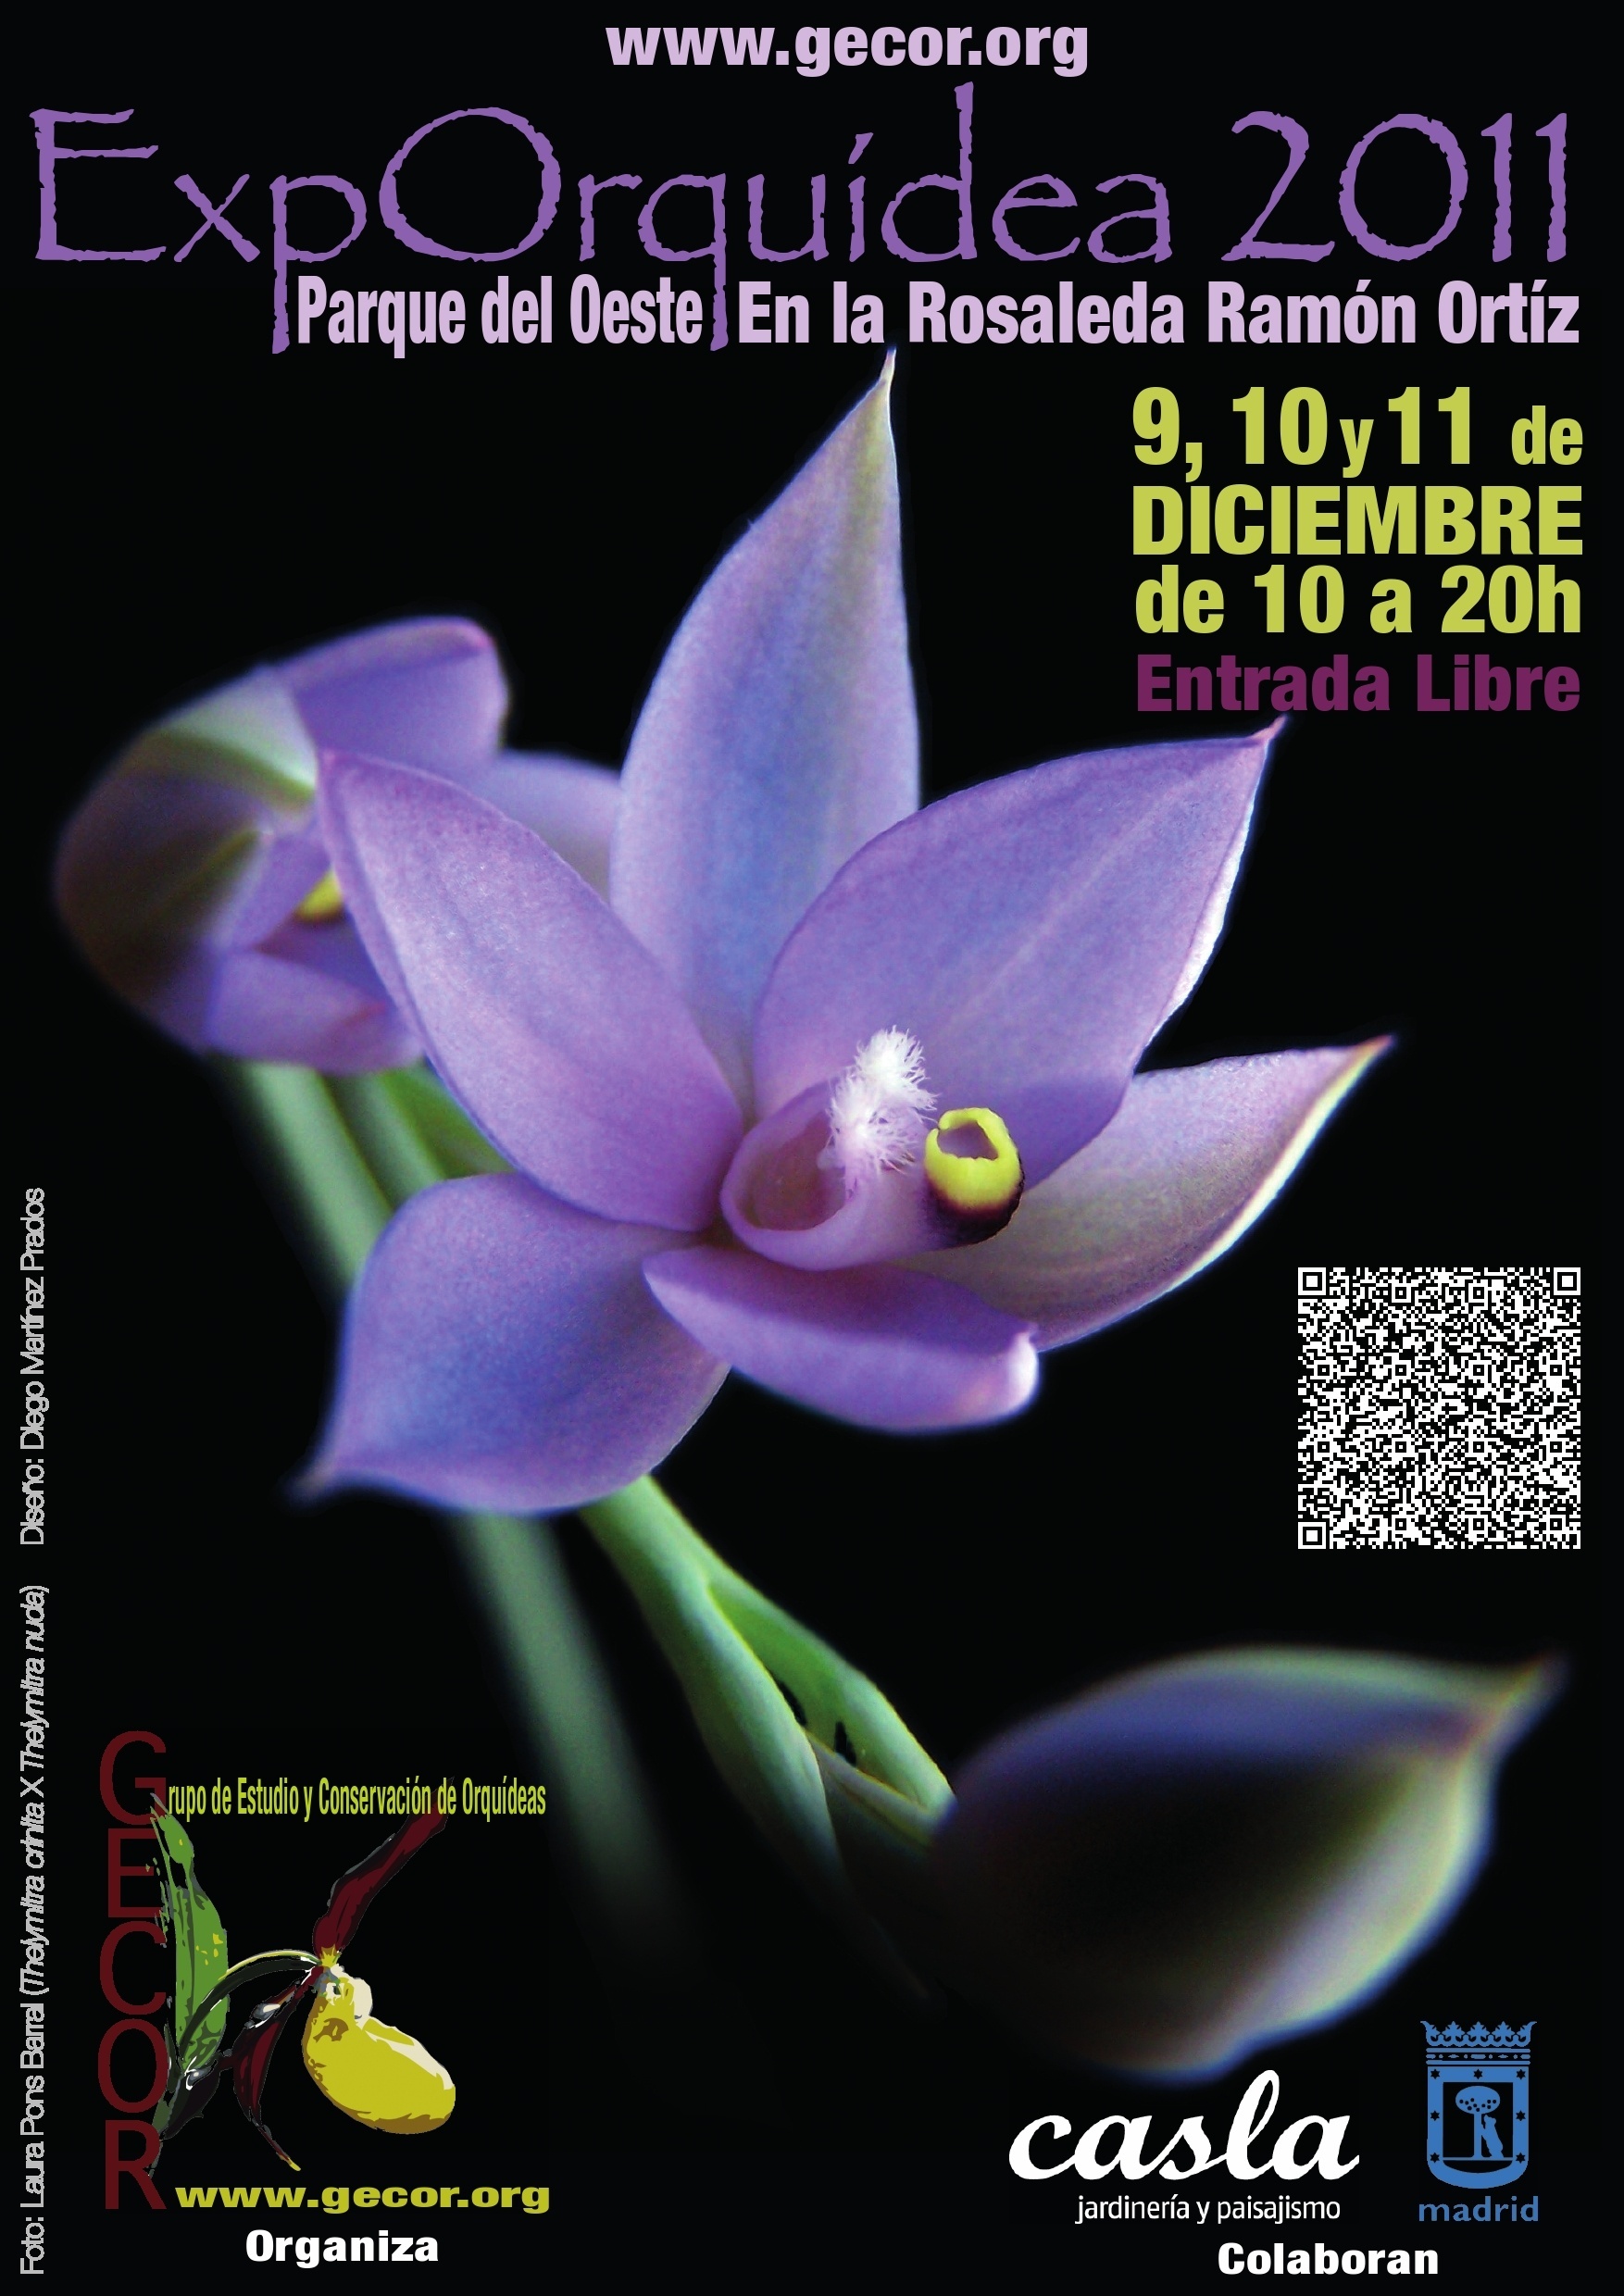 El parque del Oeste acogerá este fin de semana una exposición de las orquídeas más curiosas, raras y bellas del mundo